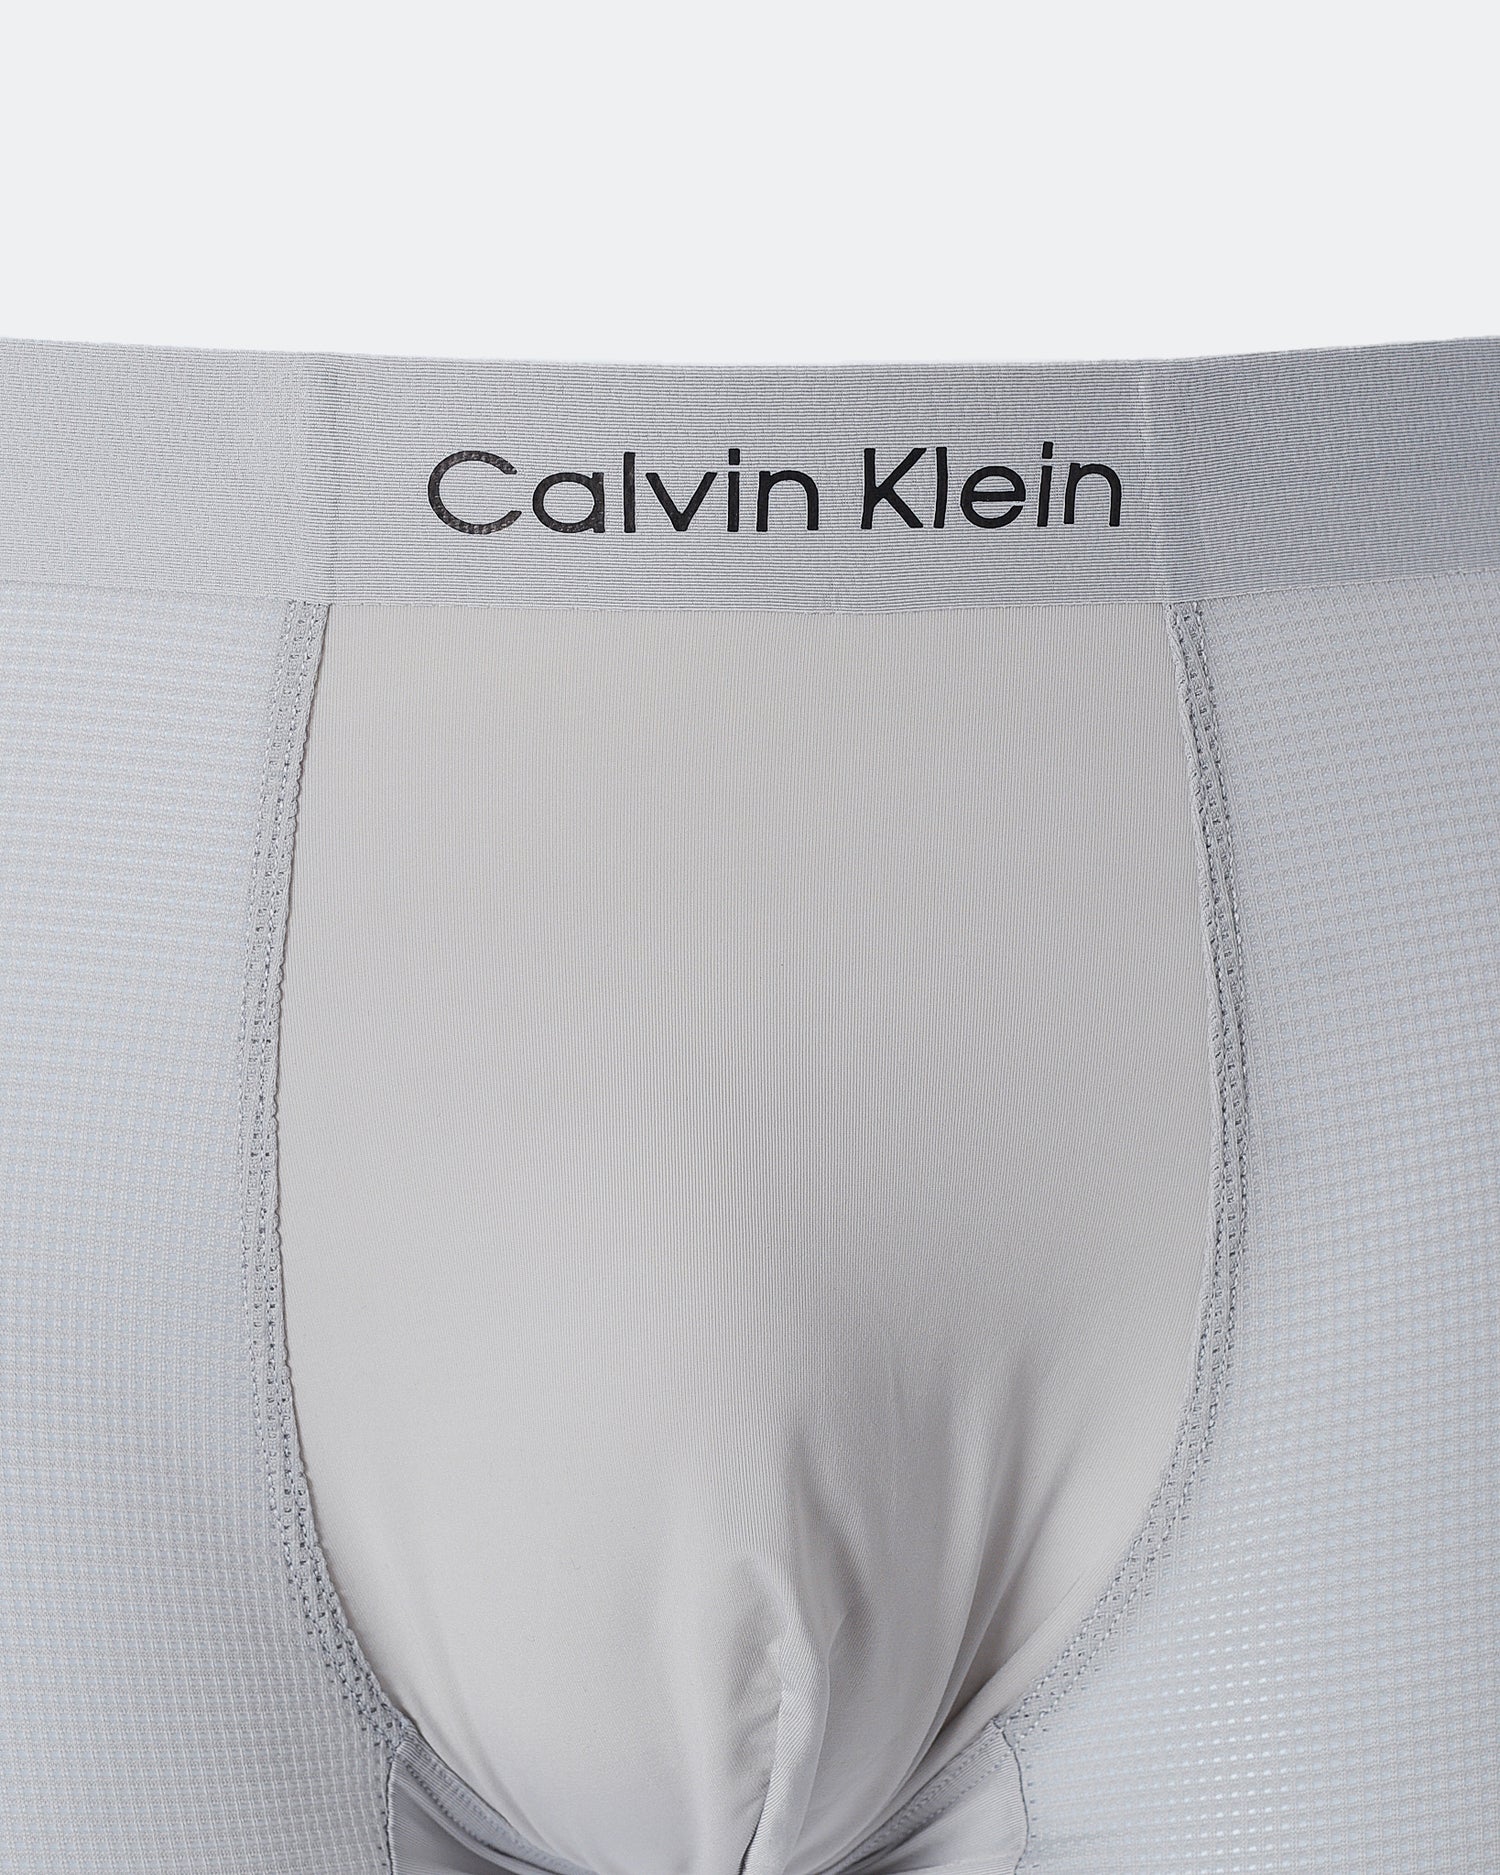 CK Light Weight Men Grey Underwear 6.90